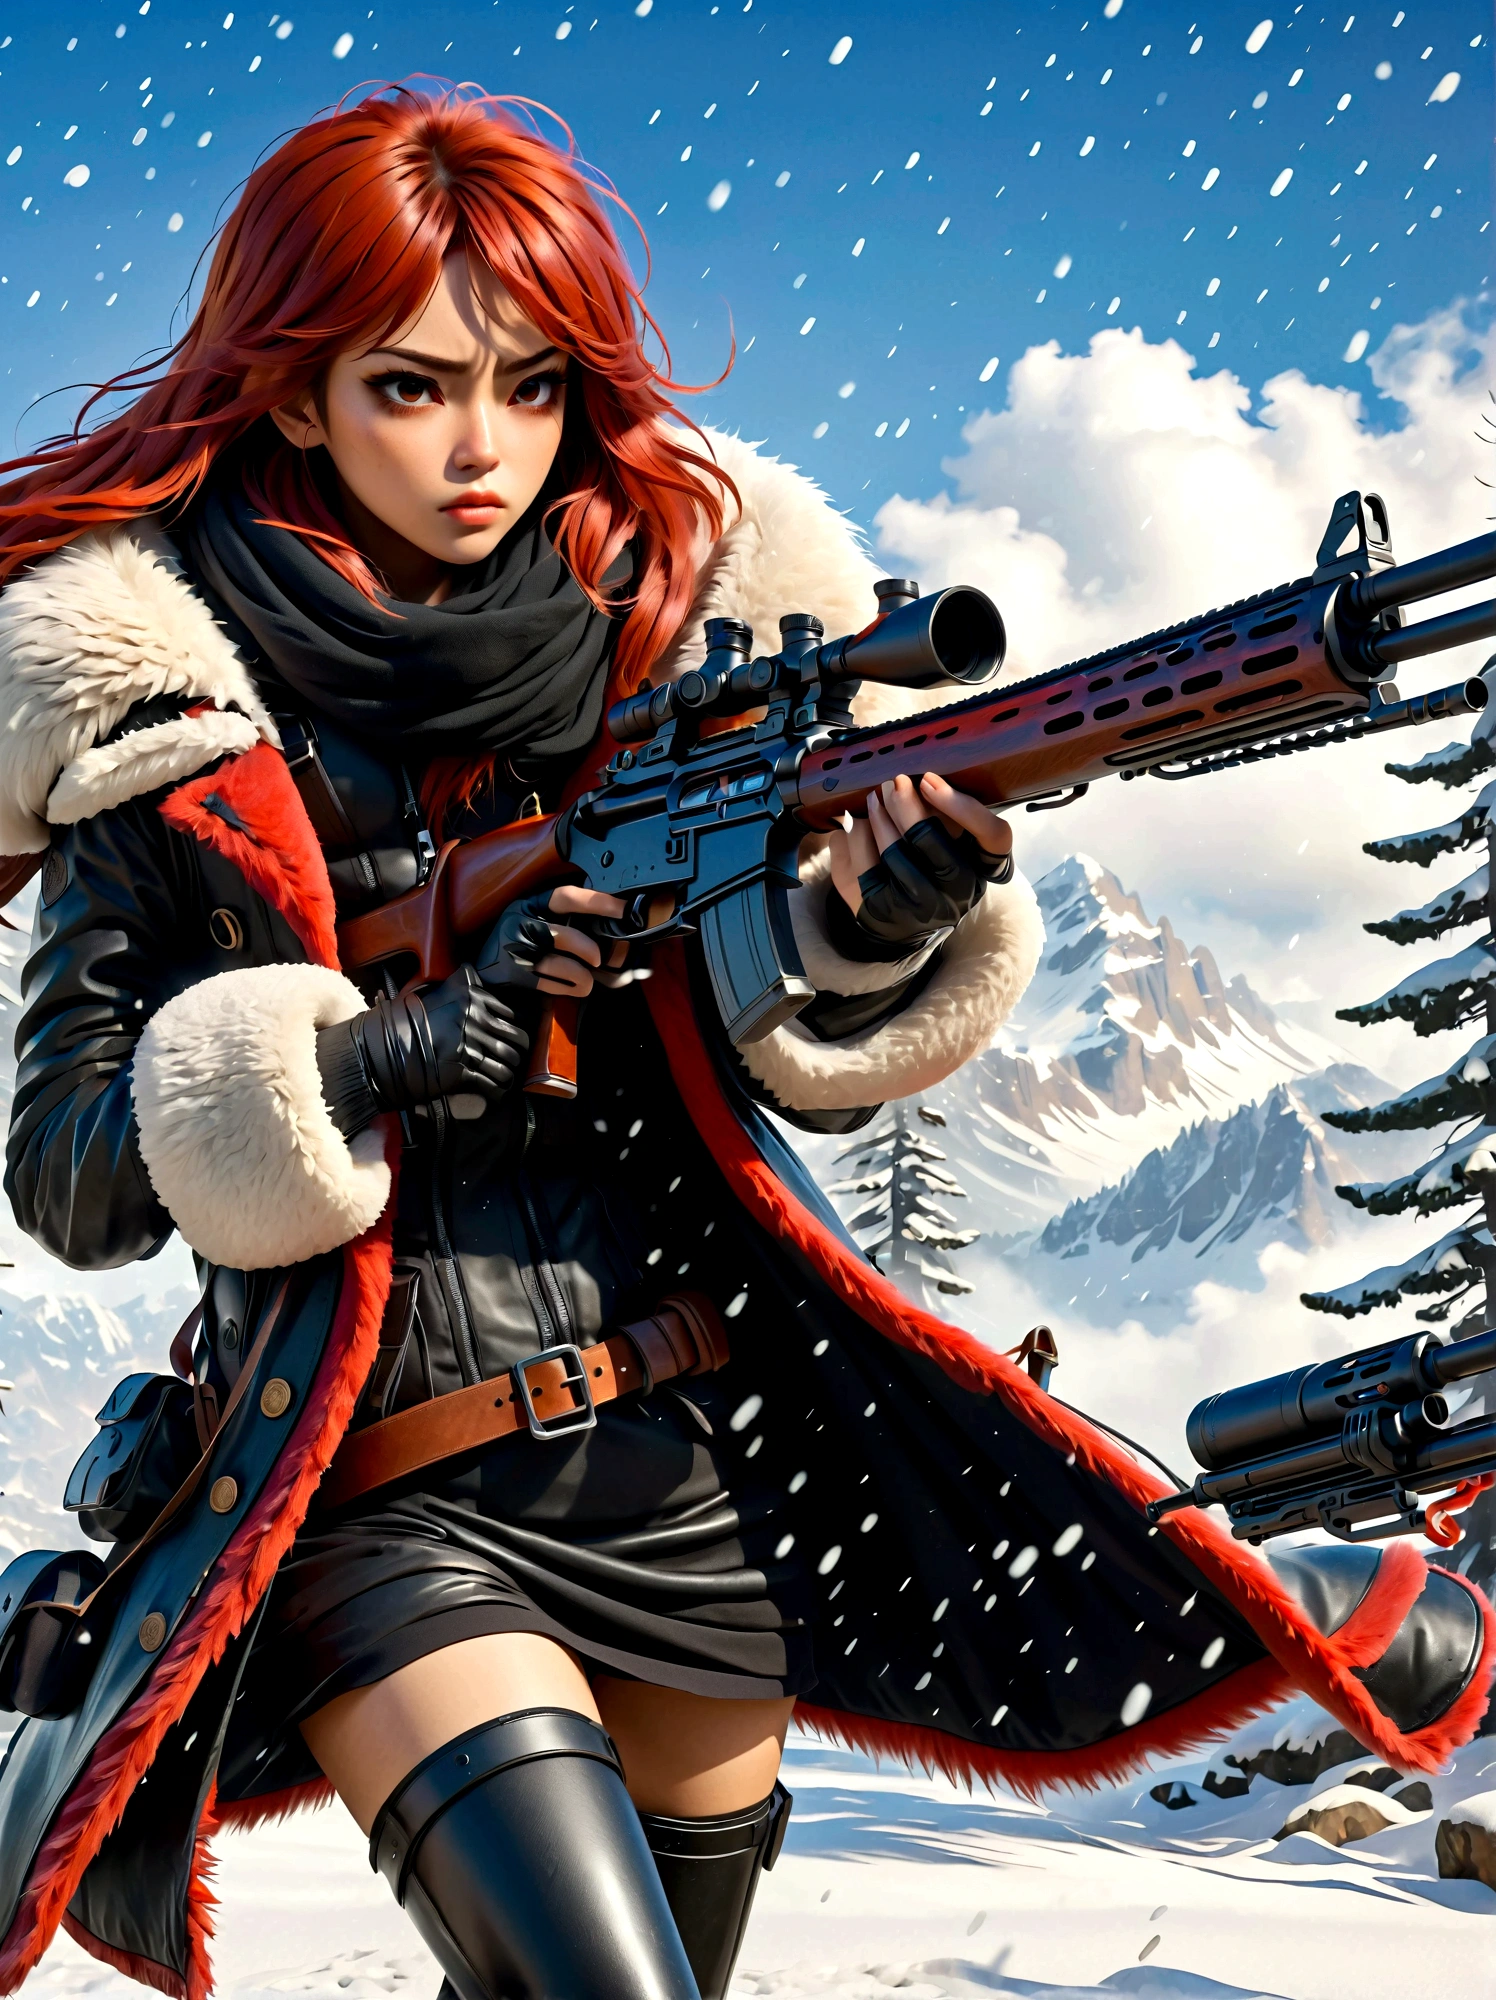 소총을 들고 있는 소녀, (역겨운 표정:1.5), 눈싸움 자세, 동쪽, 칼날과 영혼, 잉크 스타일, 긴 빨간 머리, 가죽 및 모피 코트, 추운, 삽화, 3D, 4K, 상세한, 현실적인